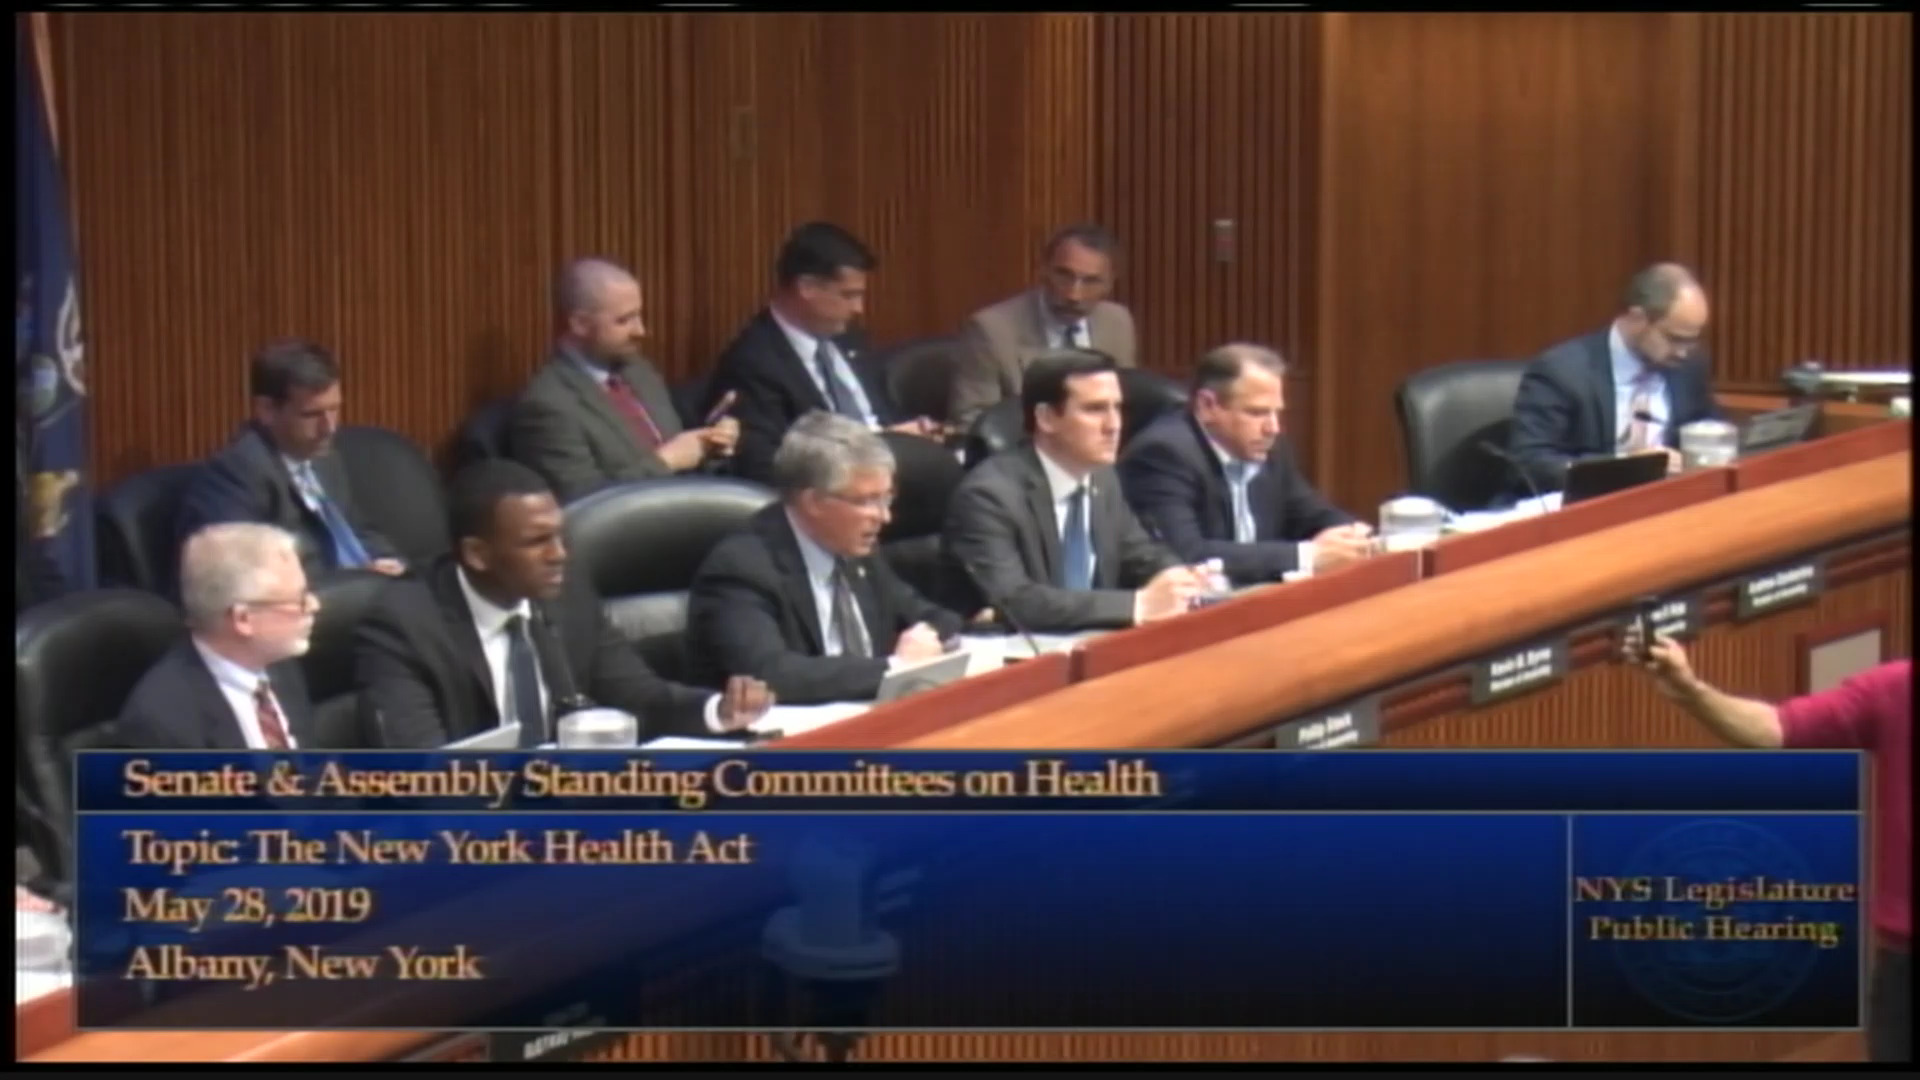 Public Hearing on the NY Health Act